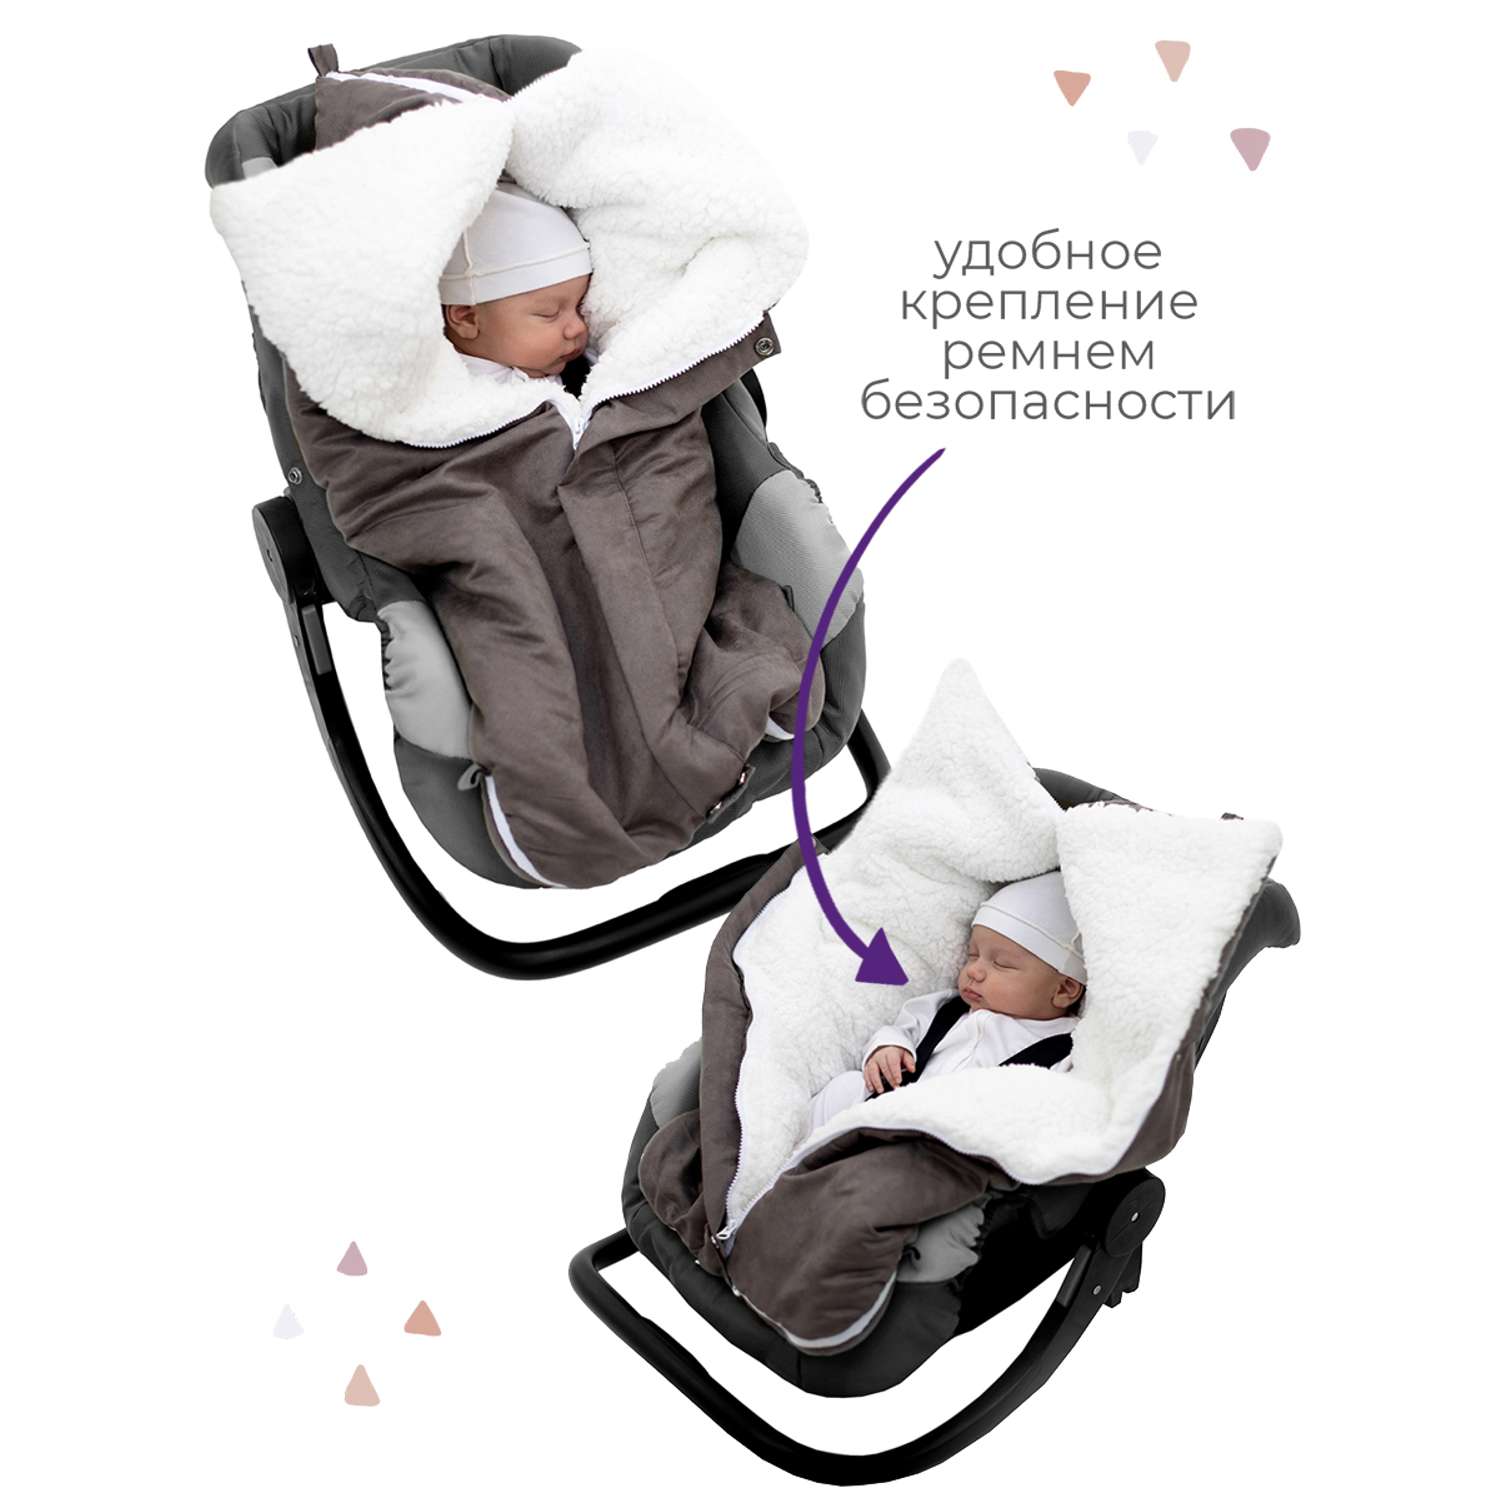 Конверт в коляску inlovery для новорожденного «Нортес» серый - фото 4